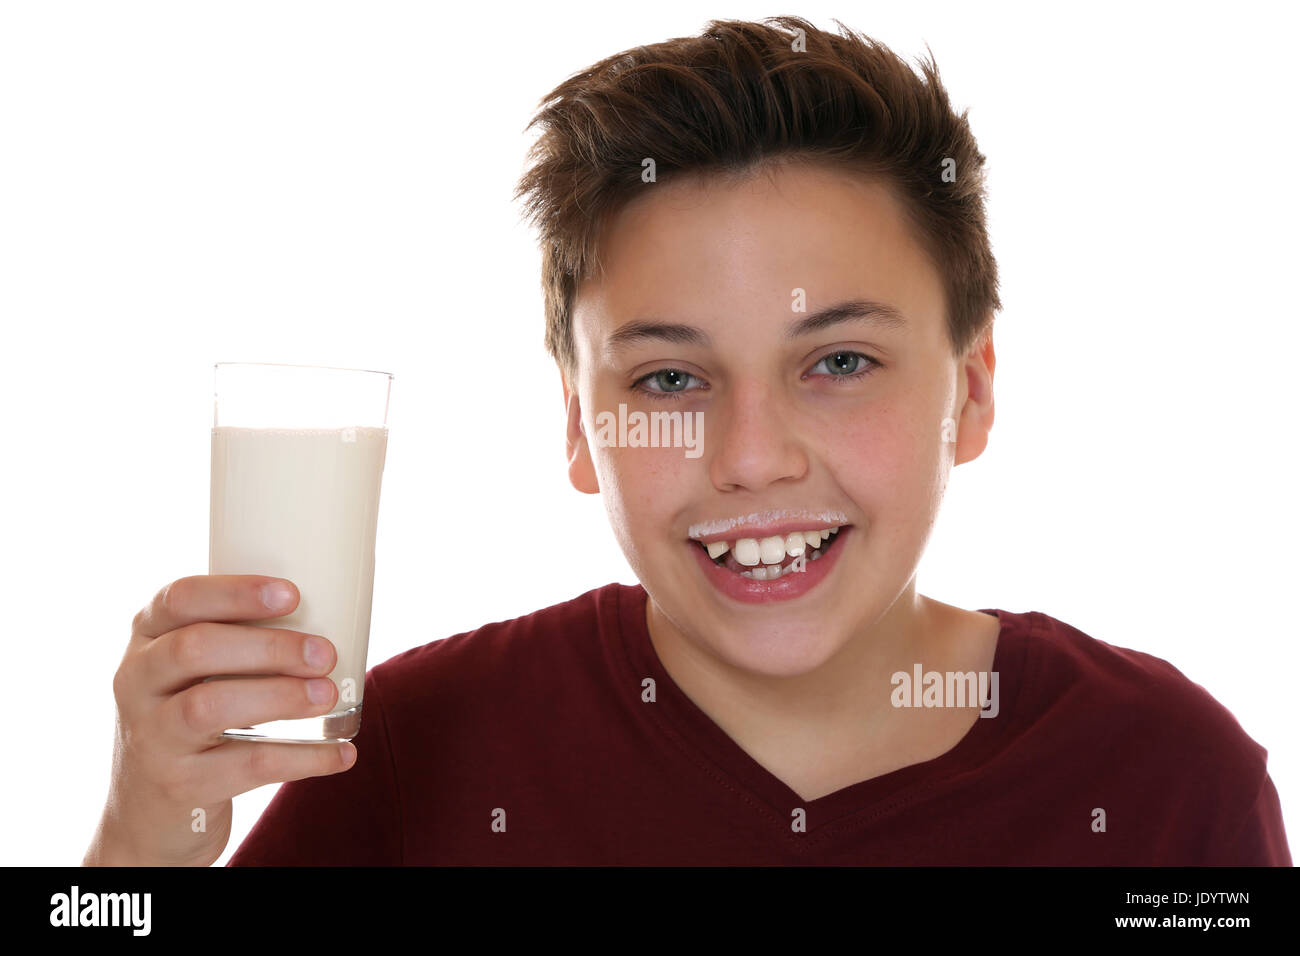 Gesunde Ernährung Kind beim Trinken von Milch mit Milchbart, isoliert vor einem weissen Hintergrund Stock Photo